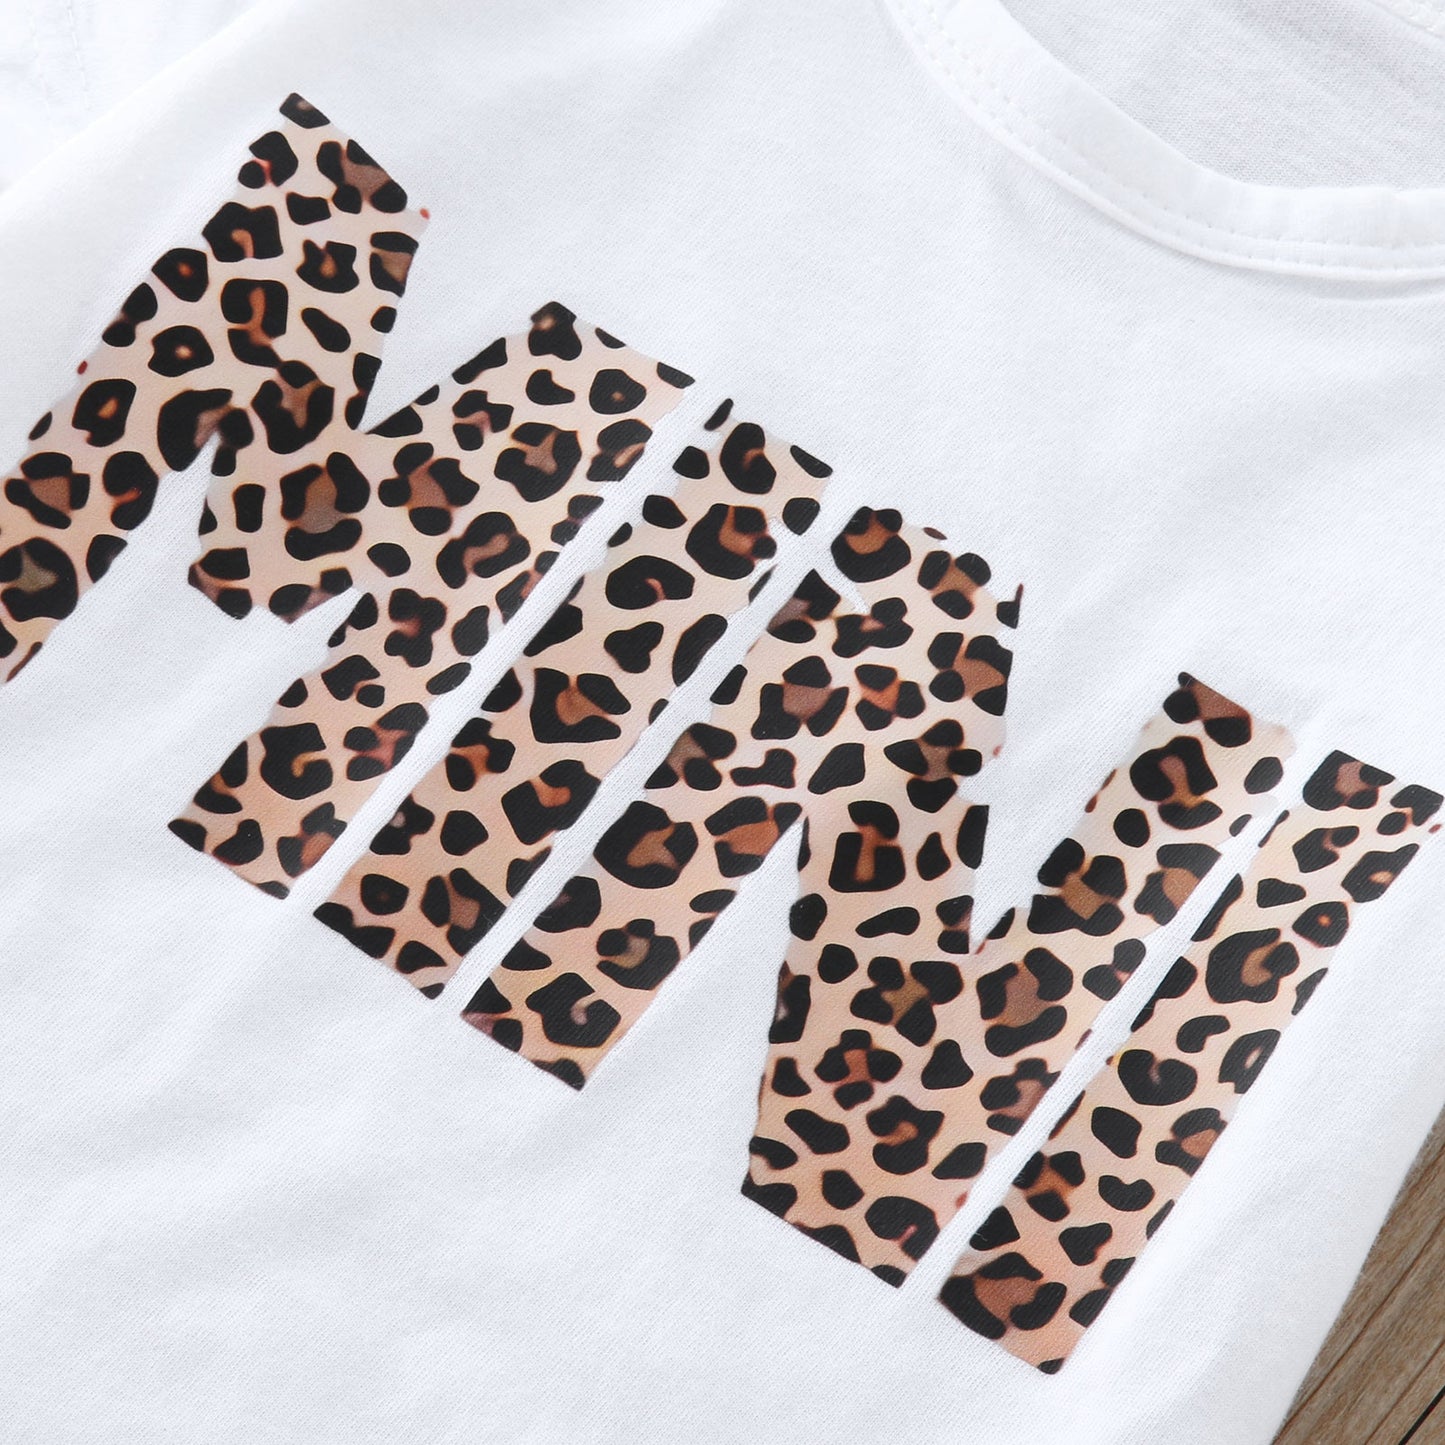 Mama And Mini Leopard Print Matching T-Shirts